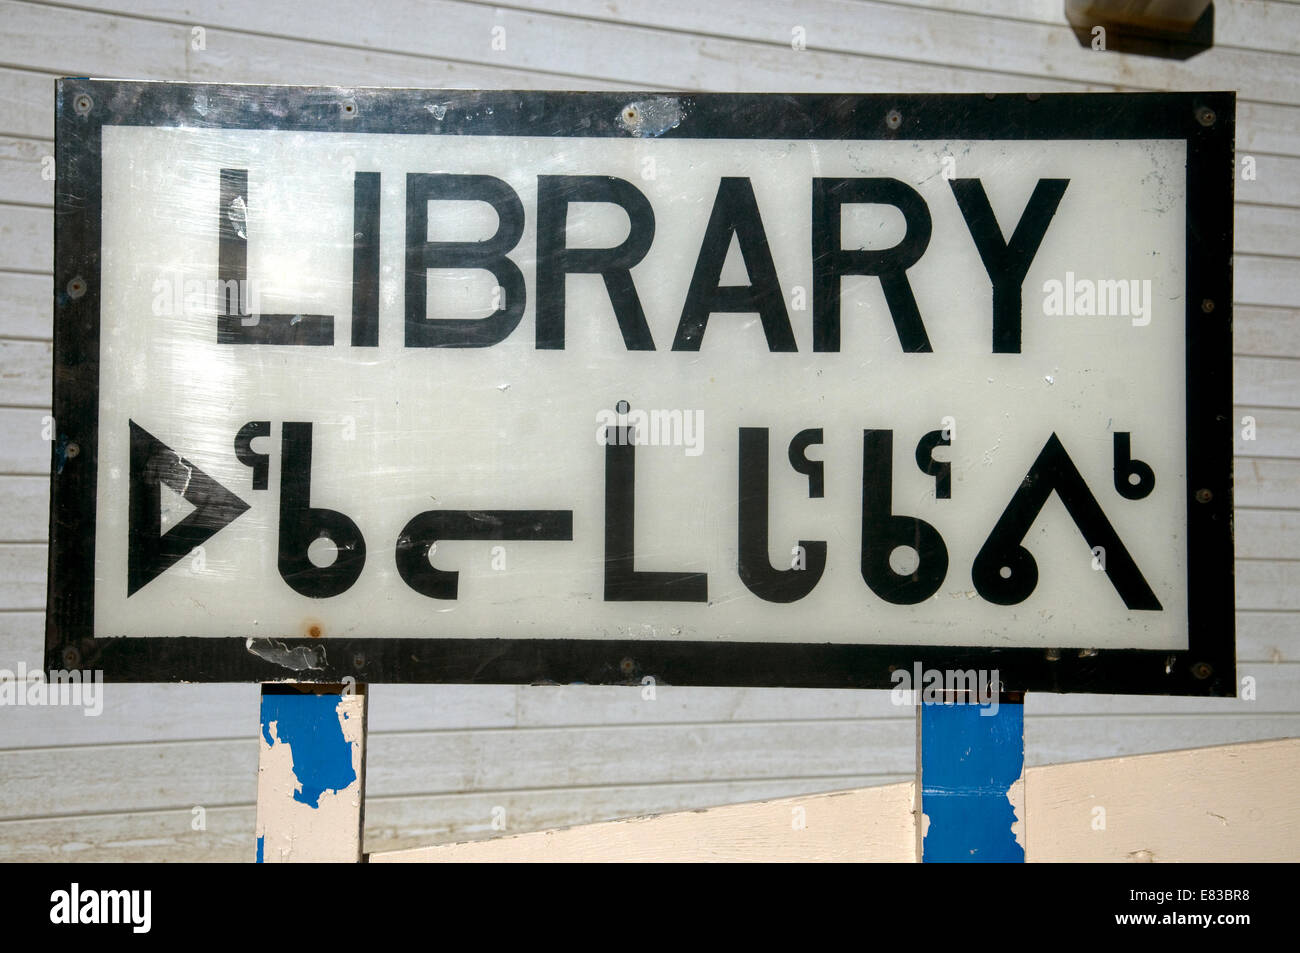 Firmar fuera de la biblioteca en un estanque admisión está en inglés y los Inuit Inuktitut script Foto de stock